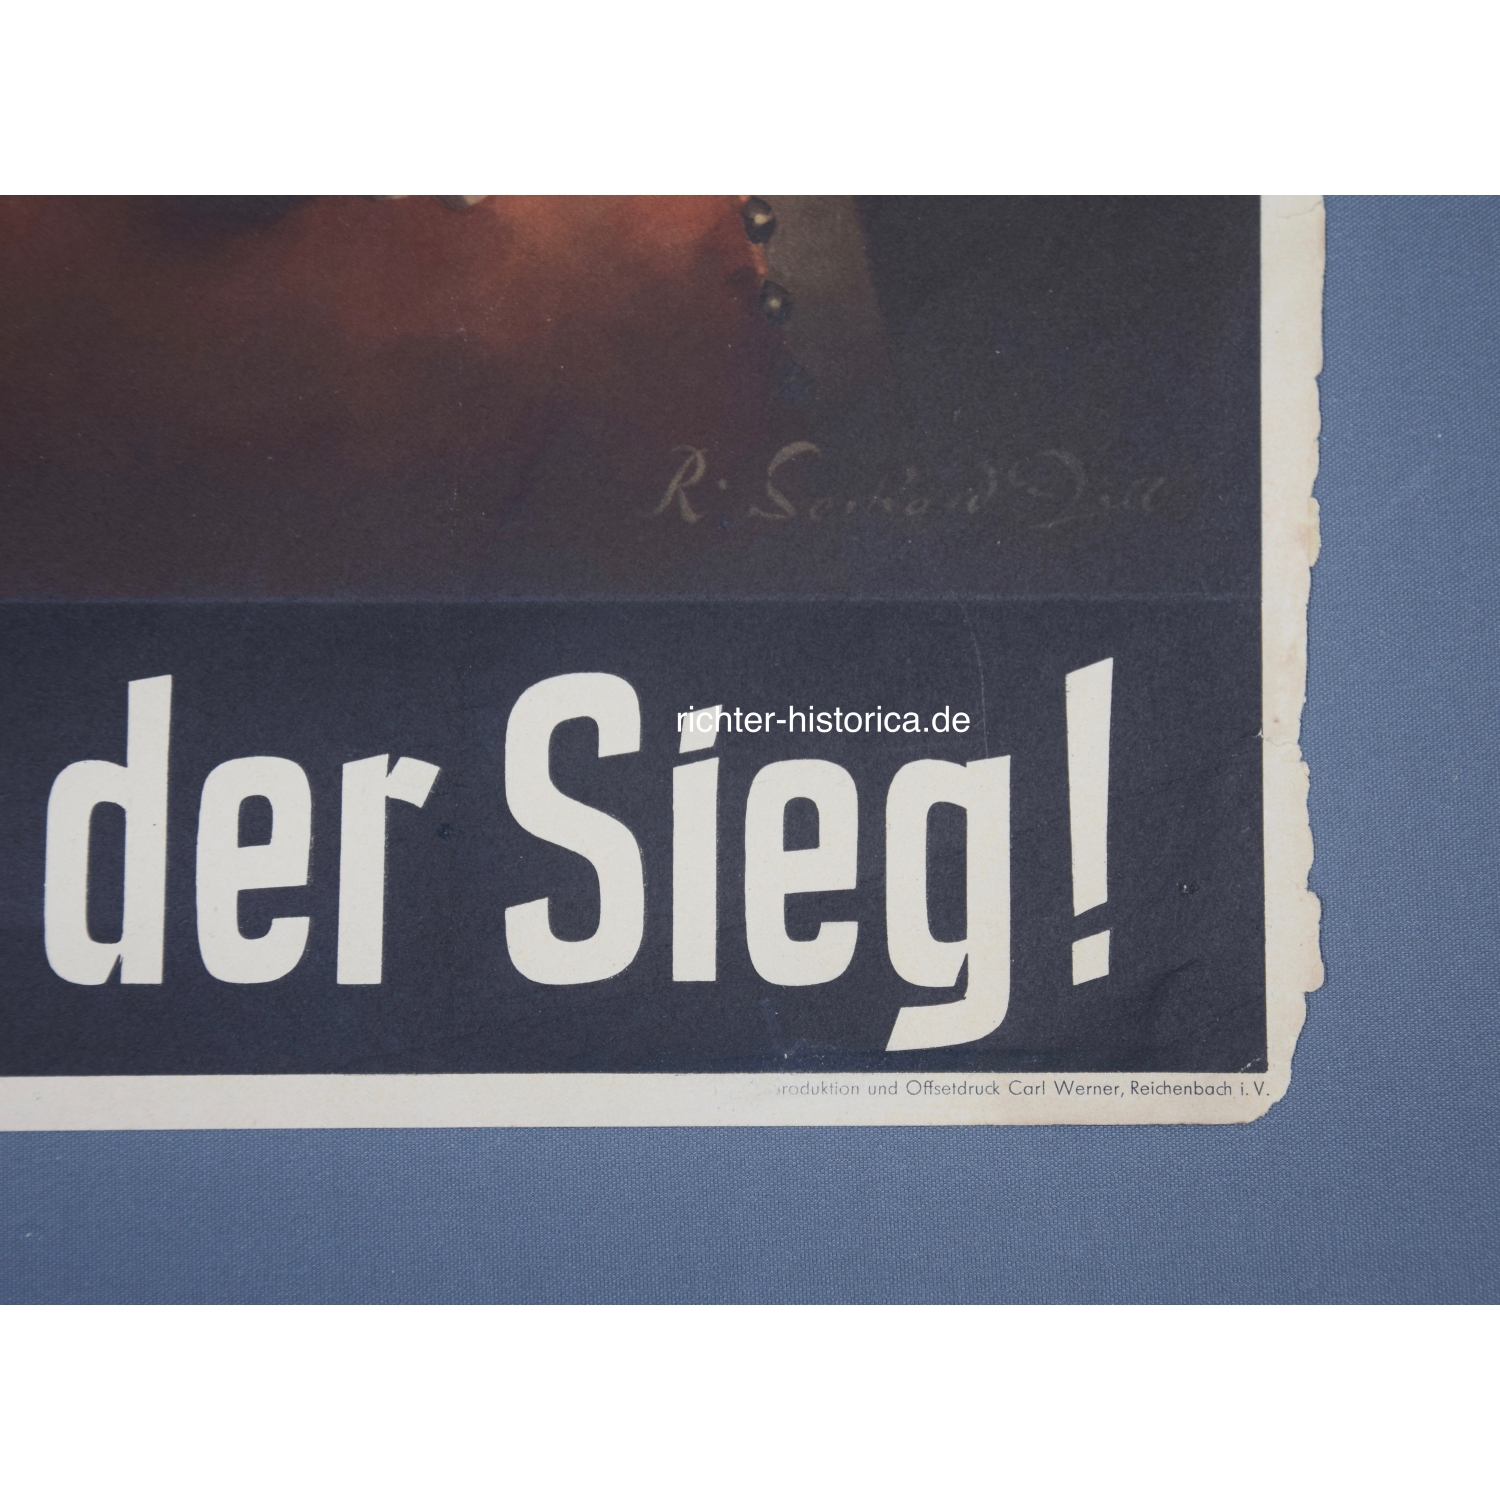 Original Plakatdruck " Adolf Hitler ist der Sieg!" 